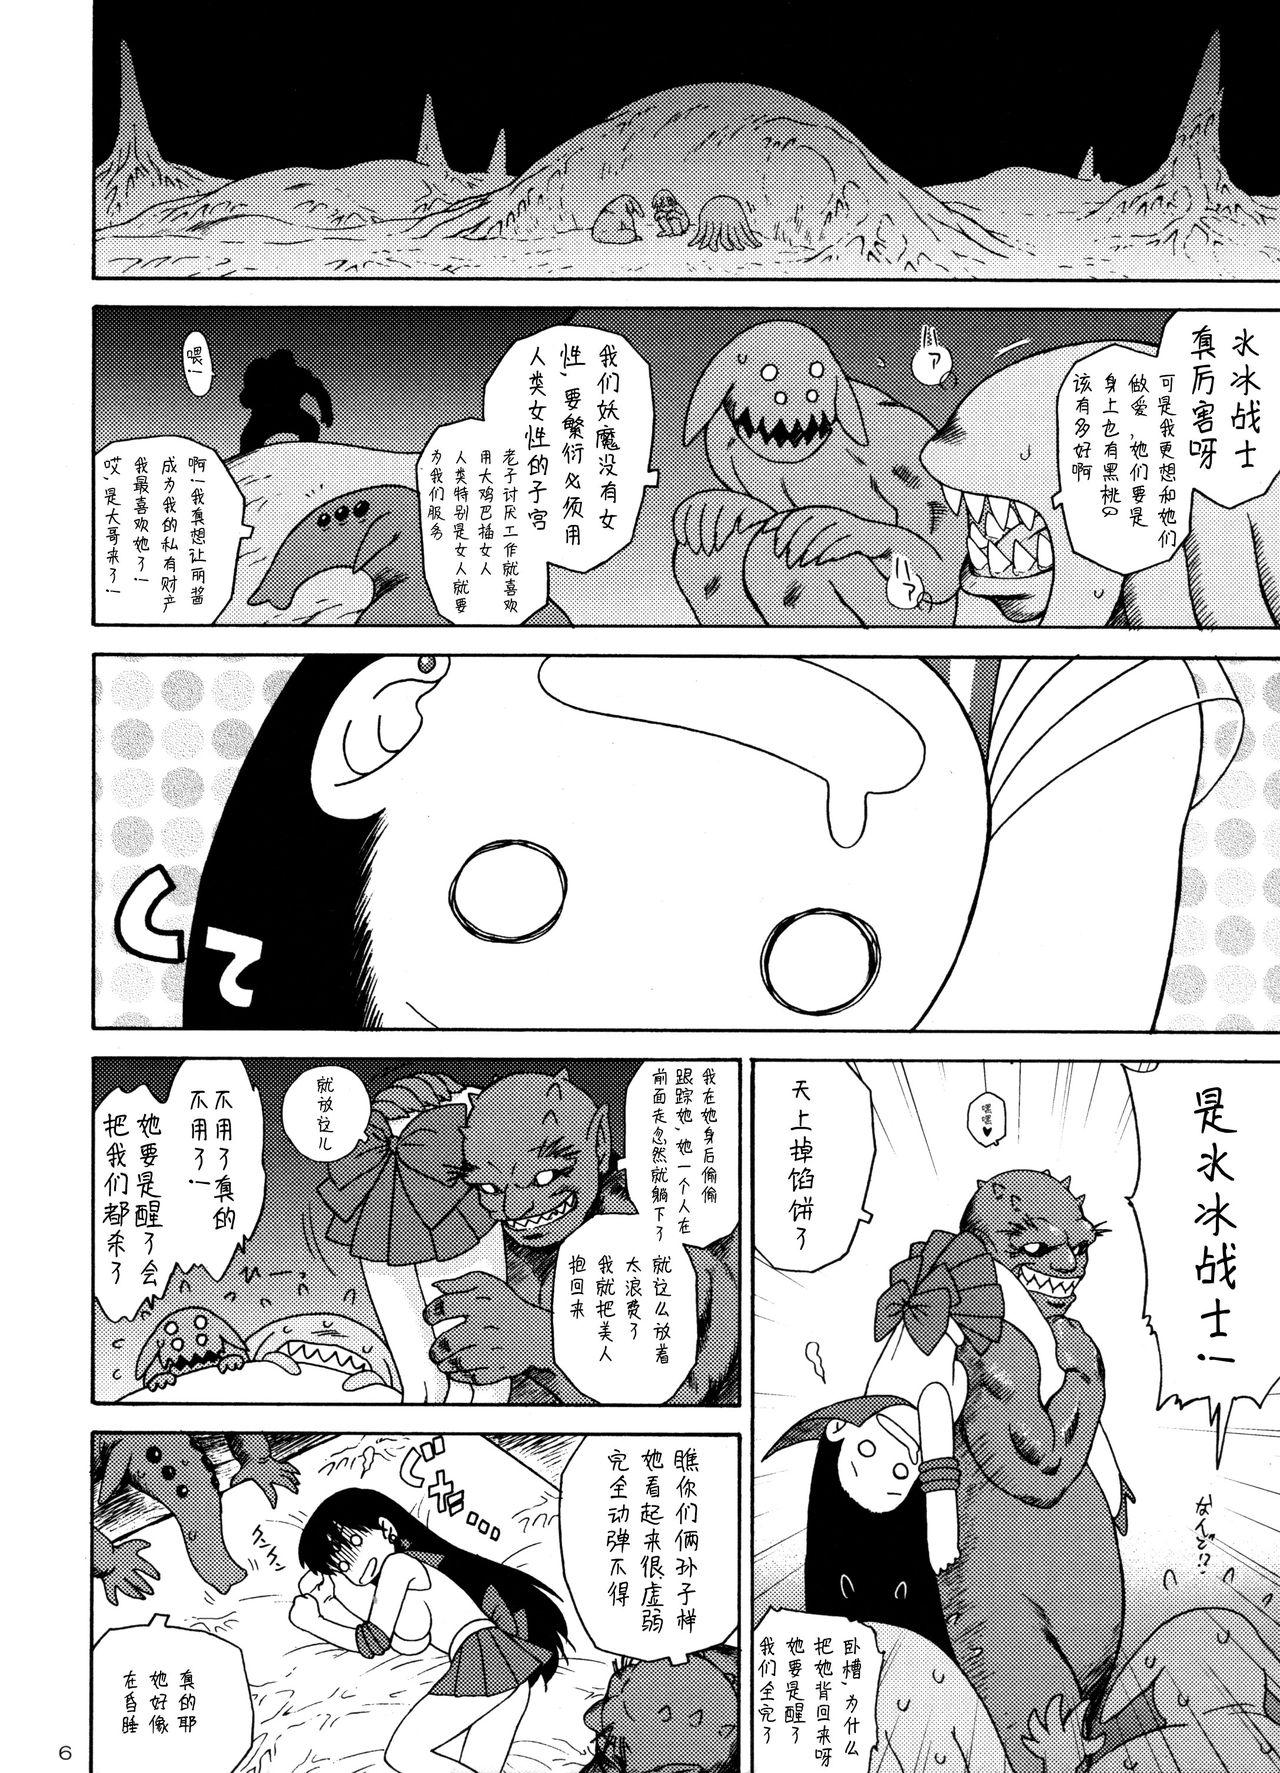 Juicy QUEEN OF SPADES - 黑桃皇后 - Sailor moon Spy - Page 9